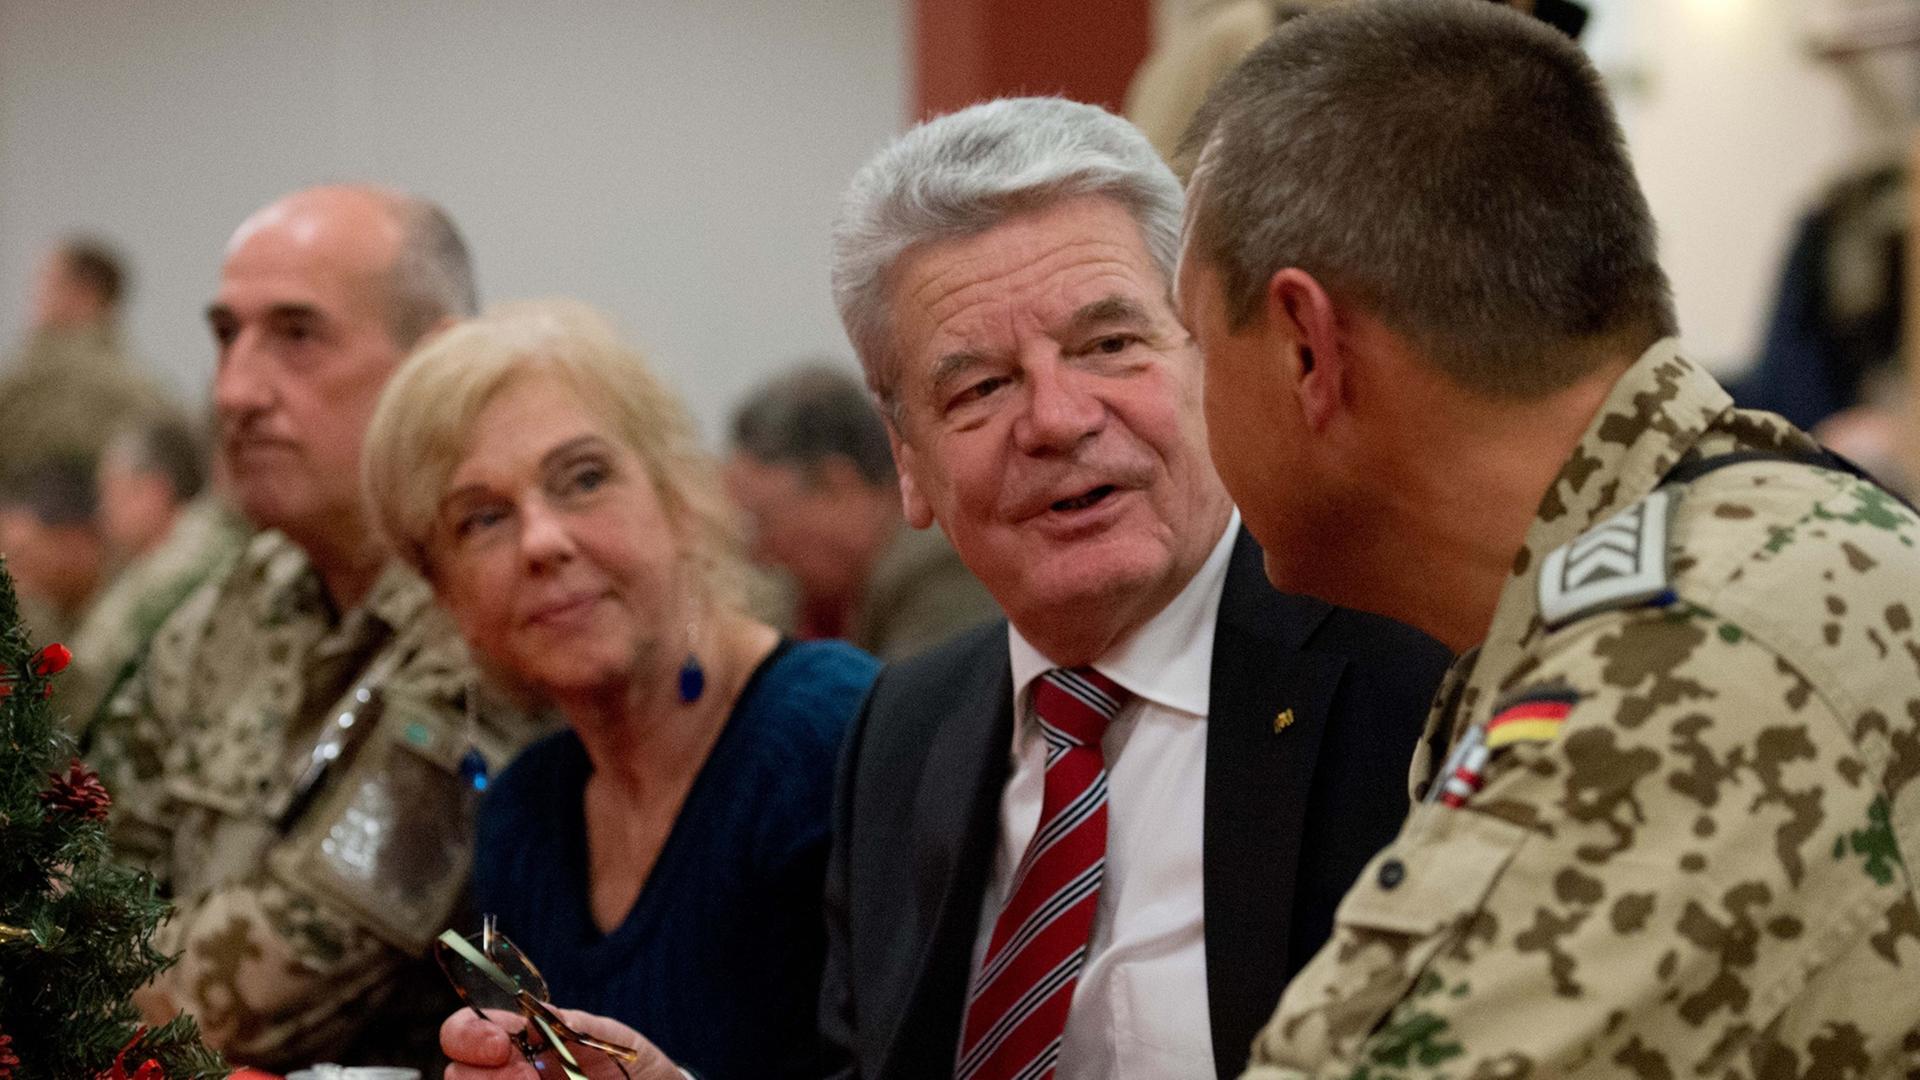 Bundespräsident Gauck Im Gespräch mit Bundeswehrsoldaten in Afghanistan